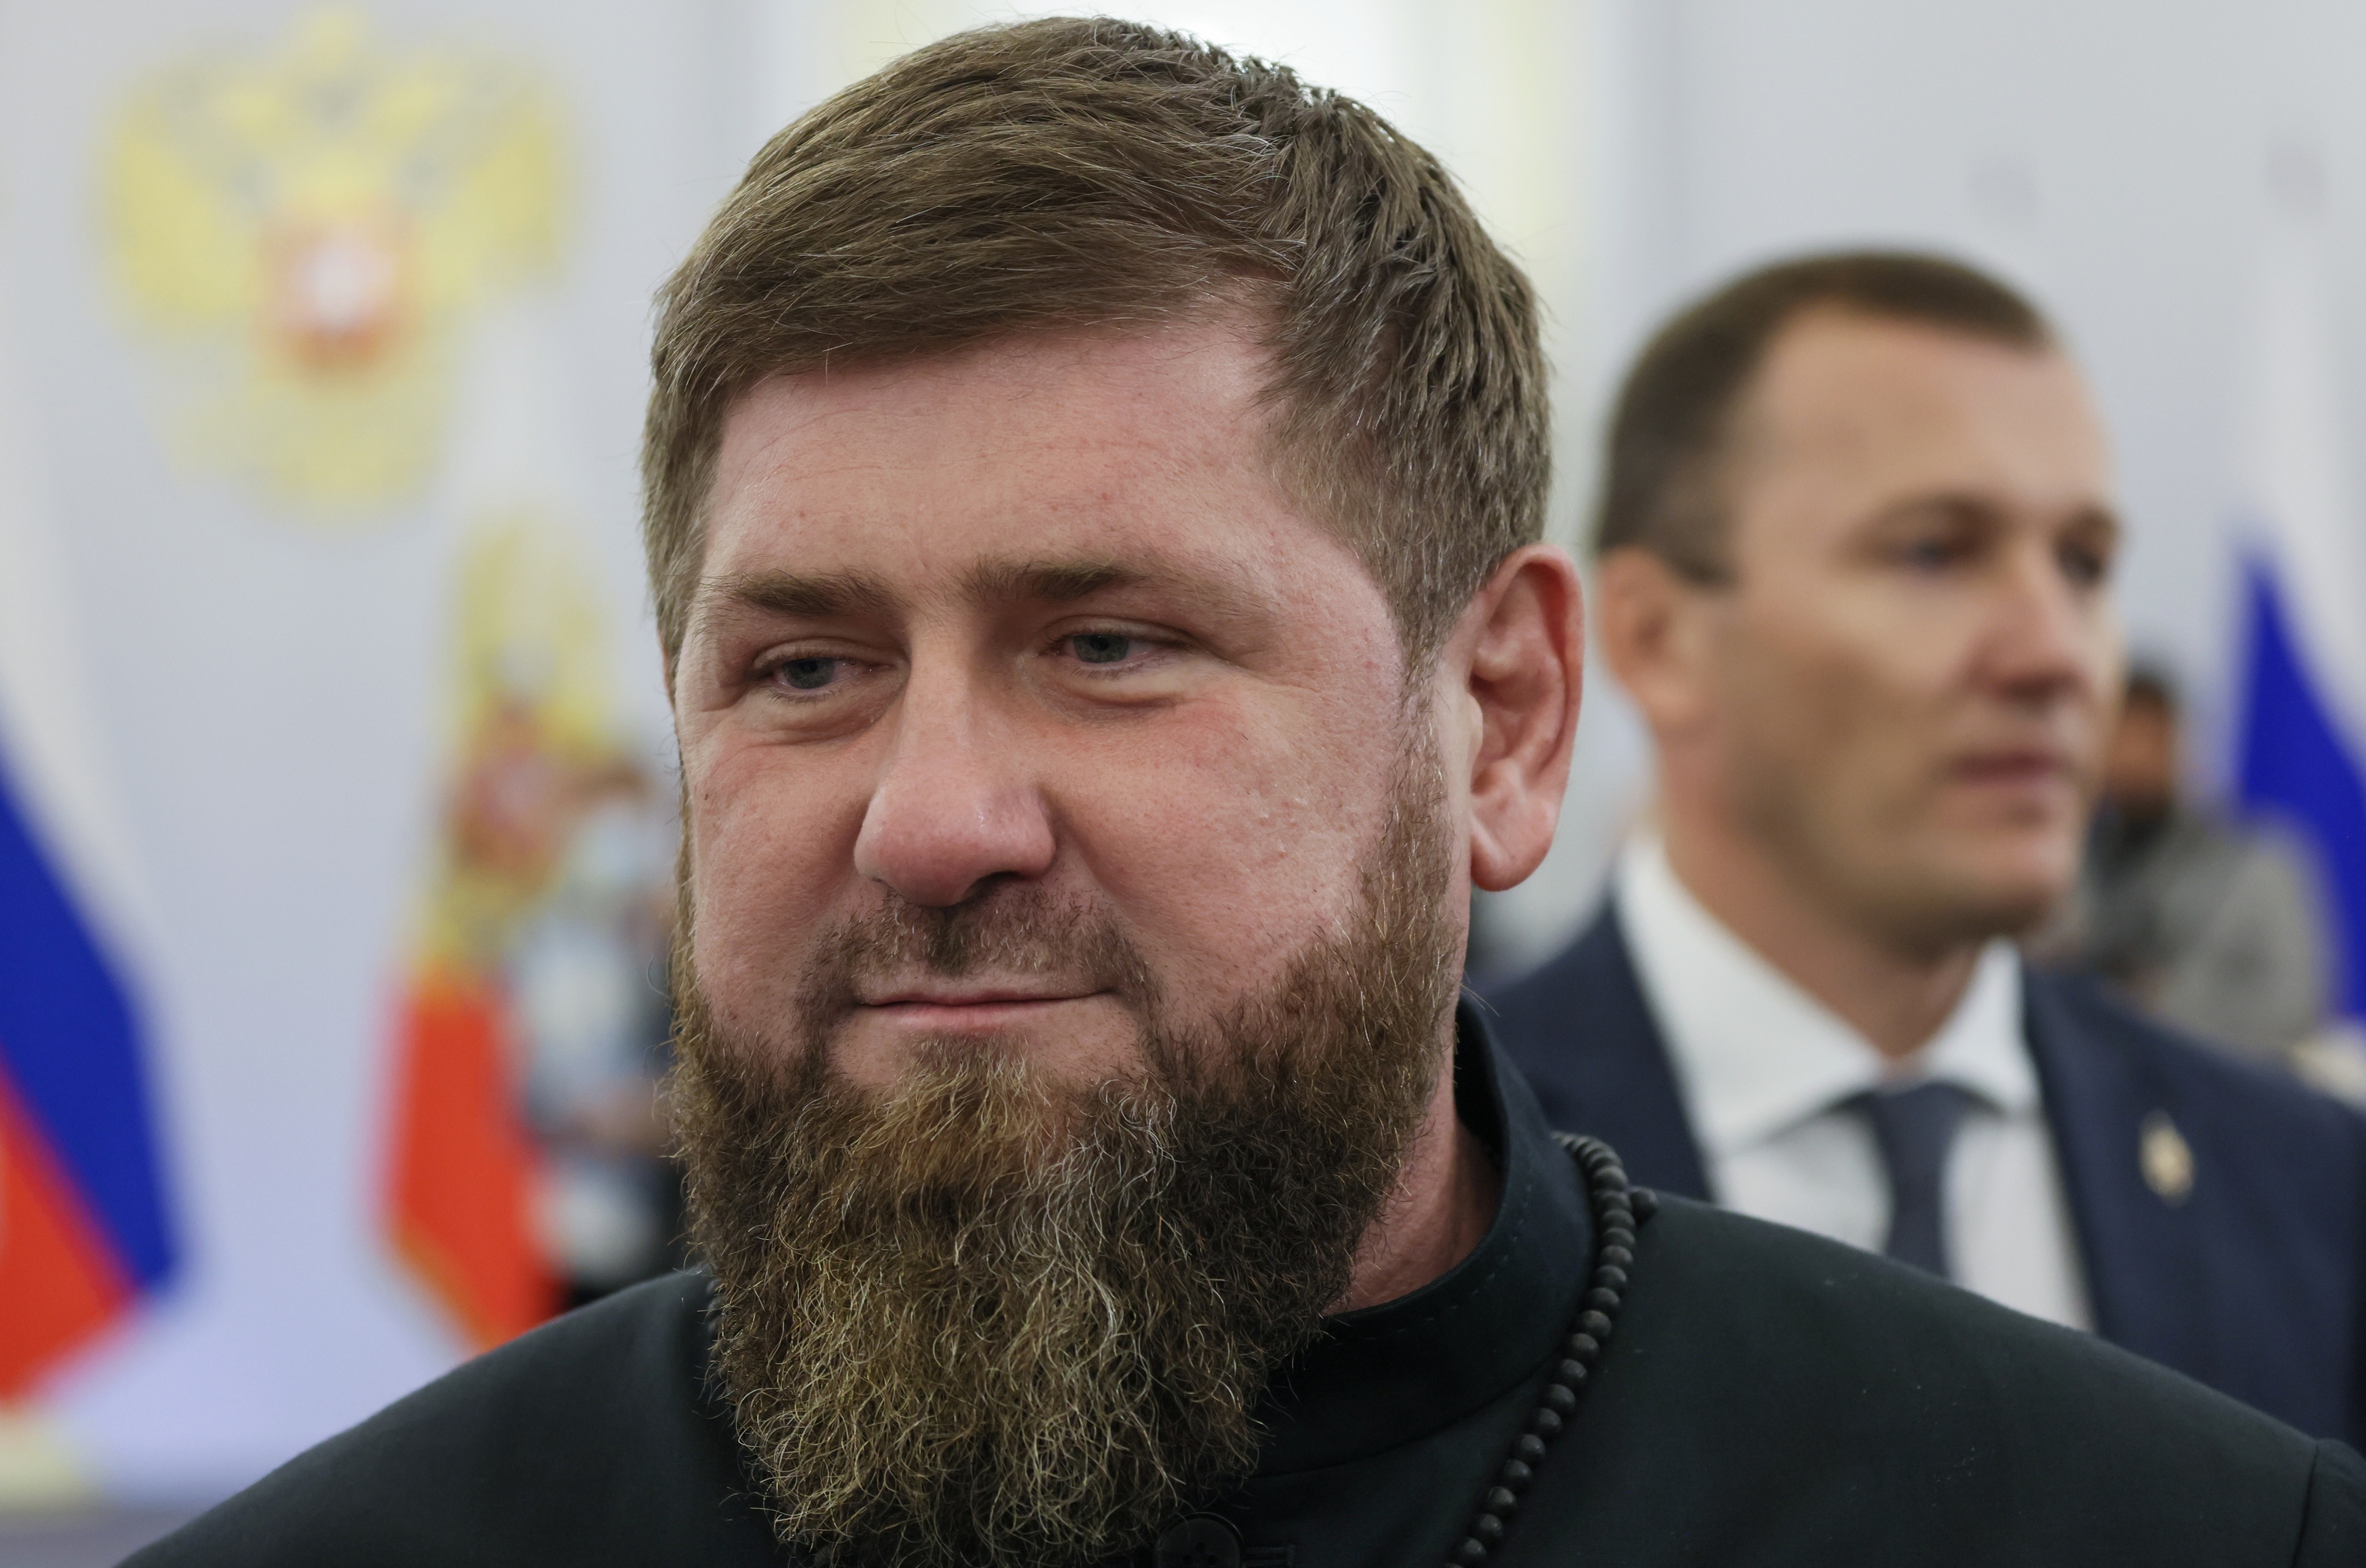 El líder checheno Kadyrov afirma haber enviado a tres de sus hijos al frente en Ucrania